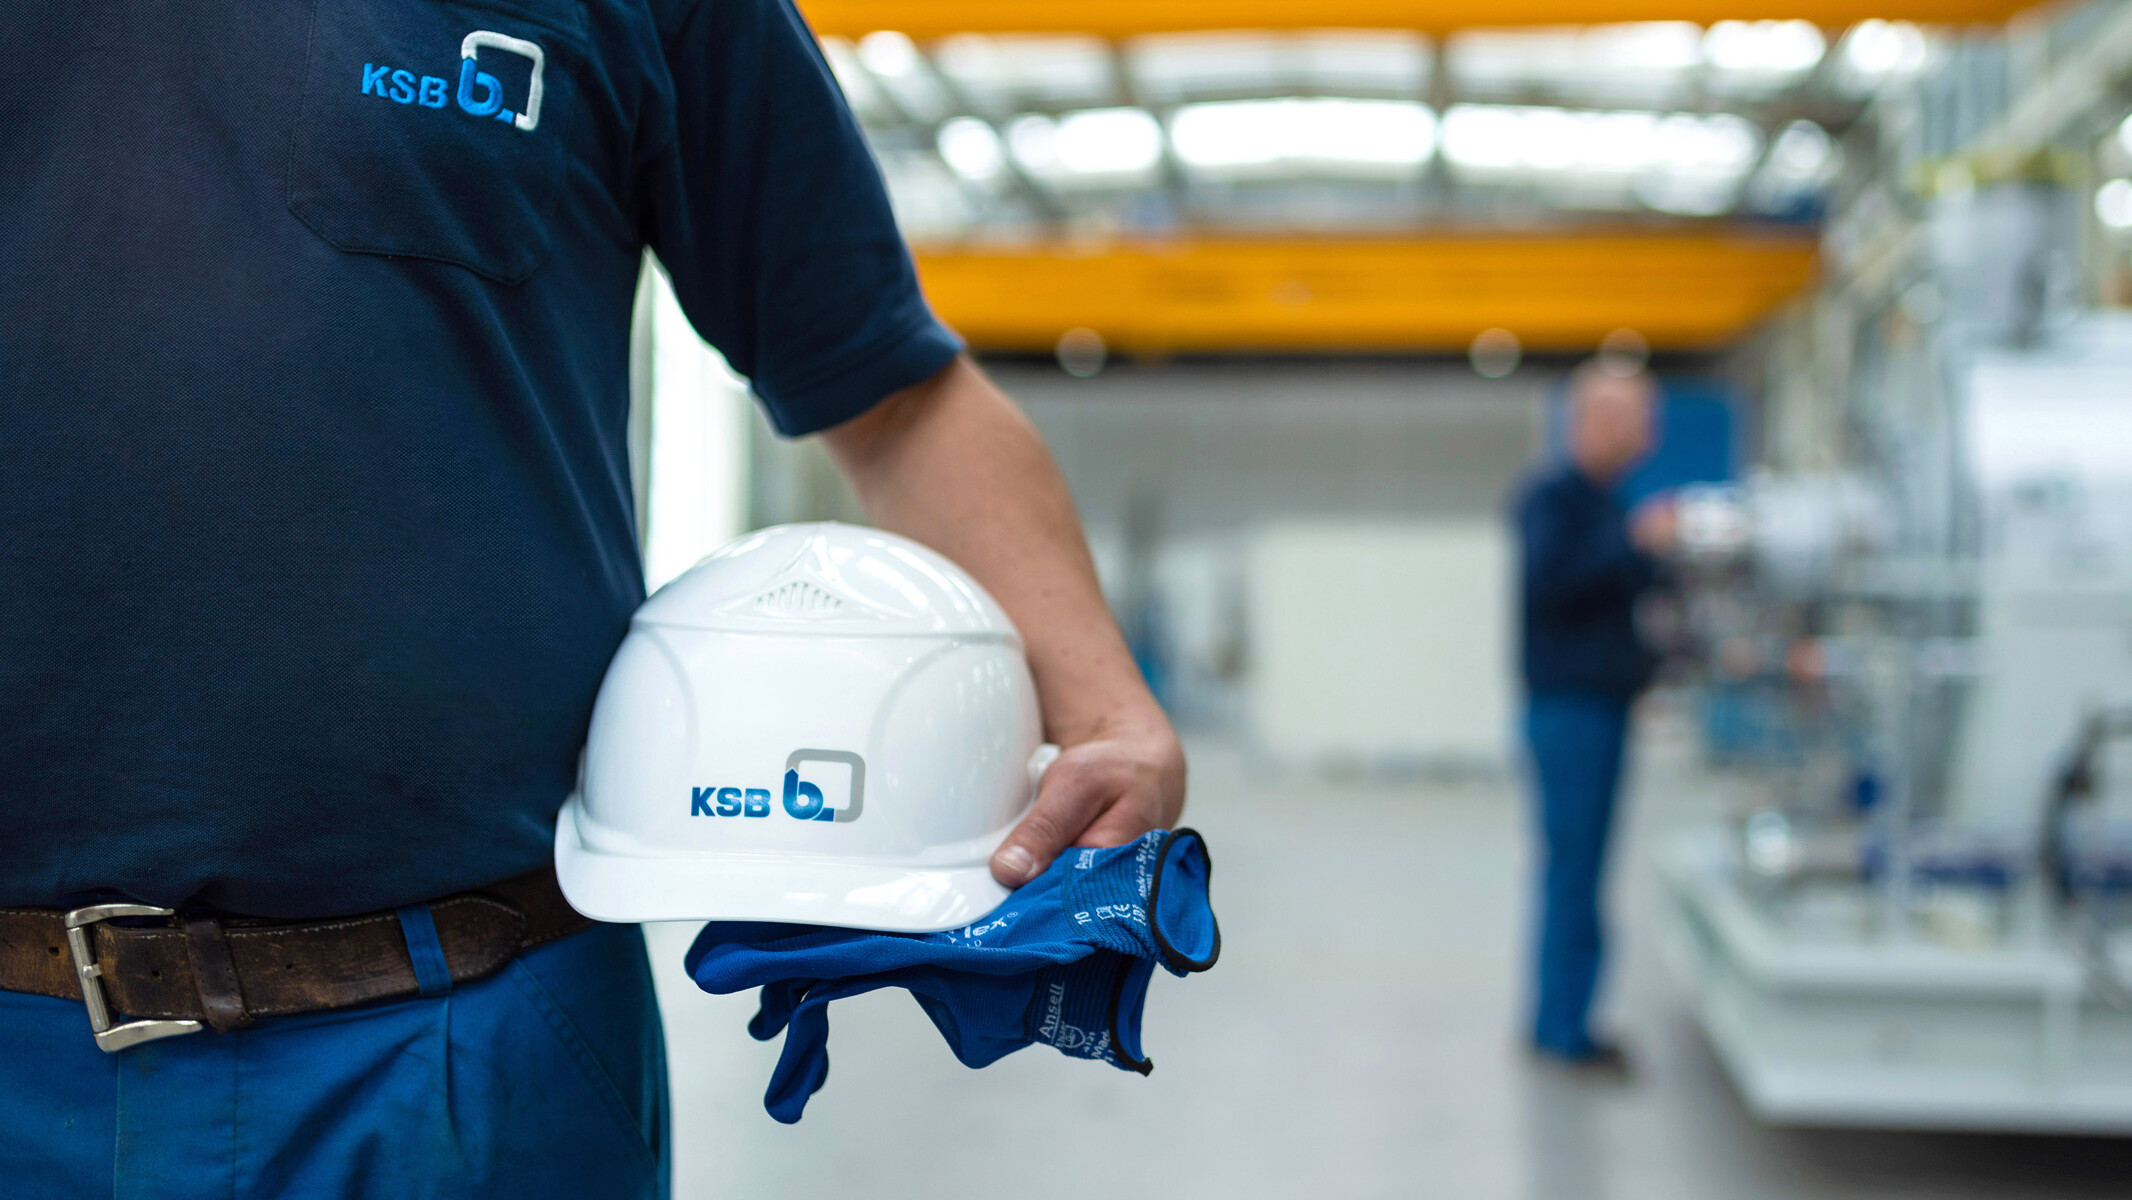 Zaposleni podjetja KSB drži čelado in rokavice